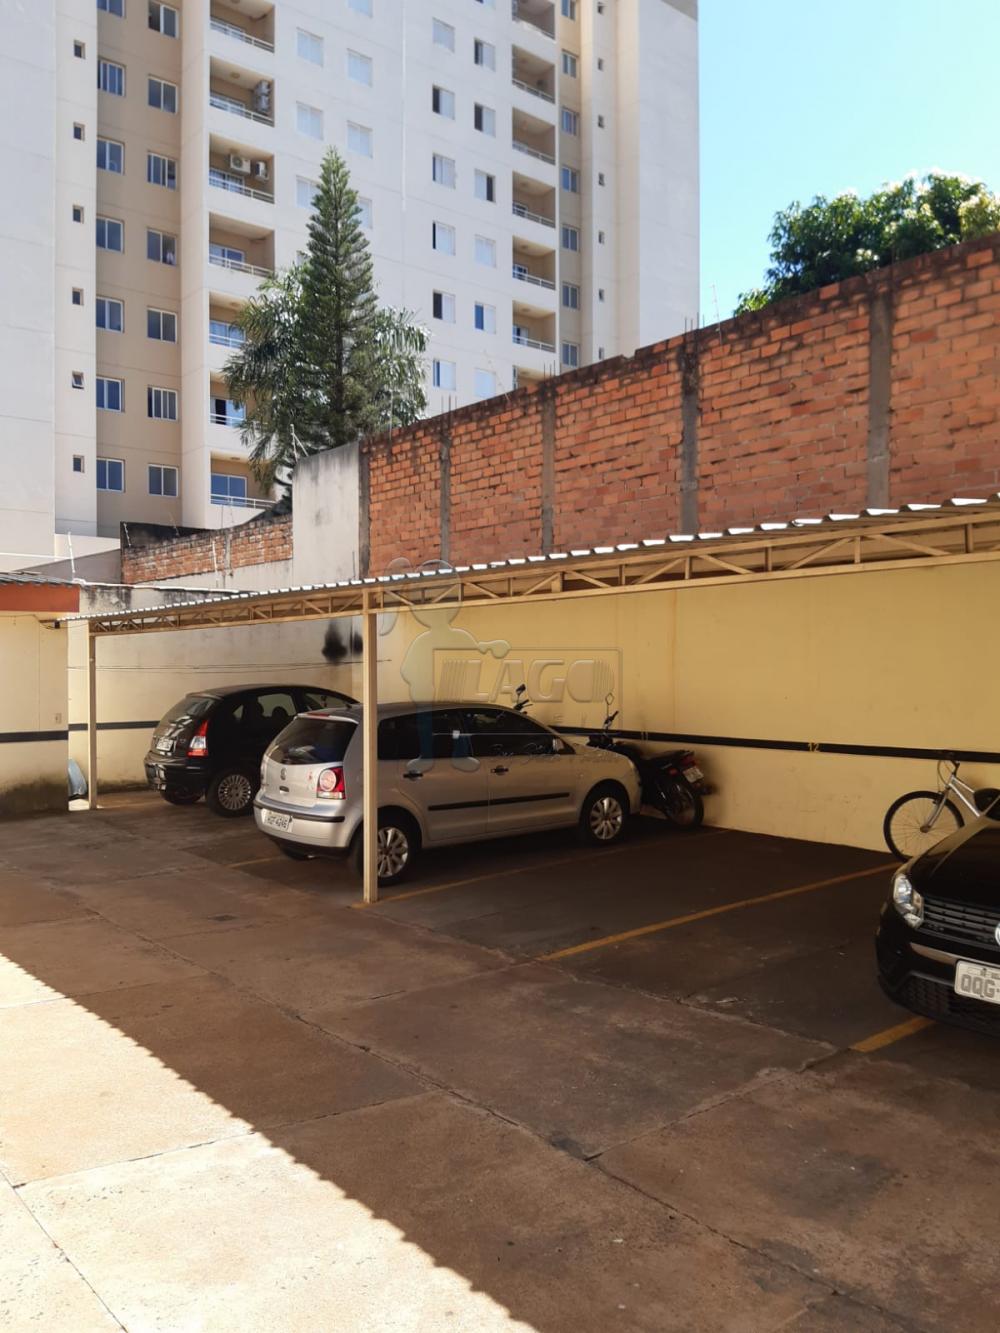 Comprar Apartamentos / Padrão em Ribeirão Preto R$ 150.000,00 - Foto 4